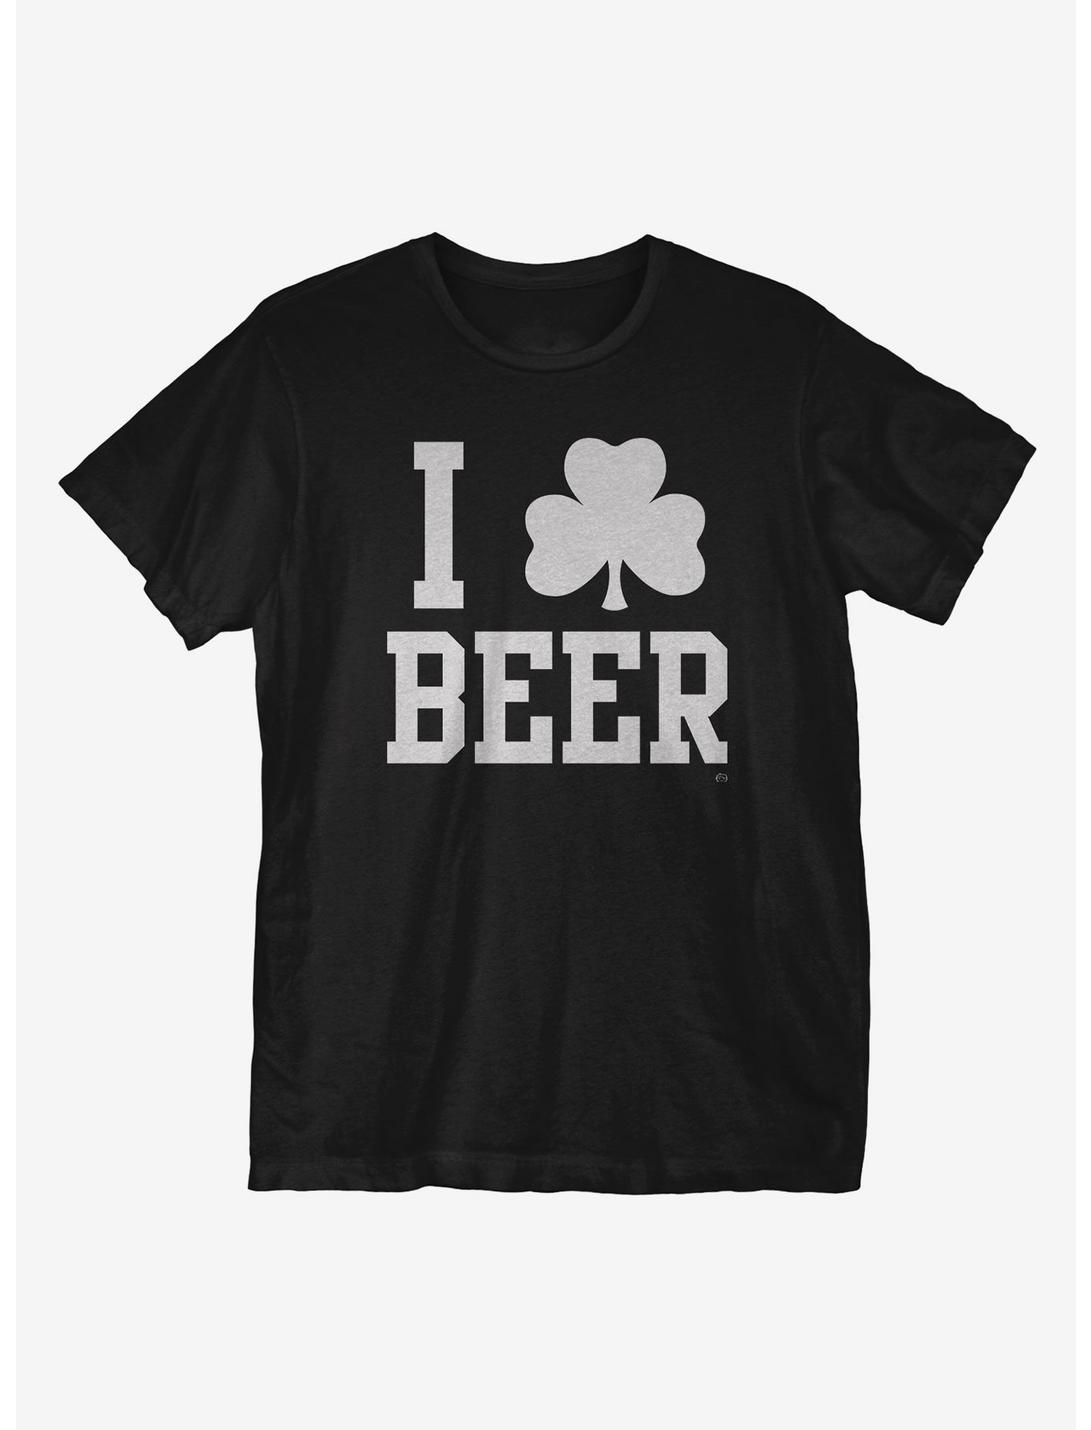 I Clover Beer T-Shirt, BLACK, hi-res